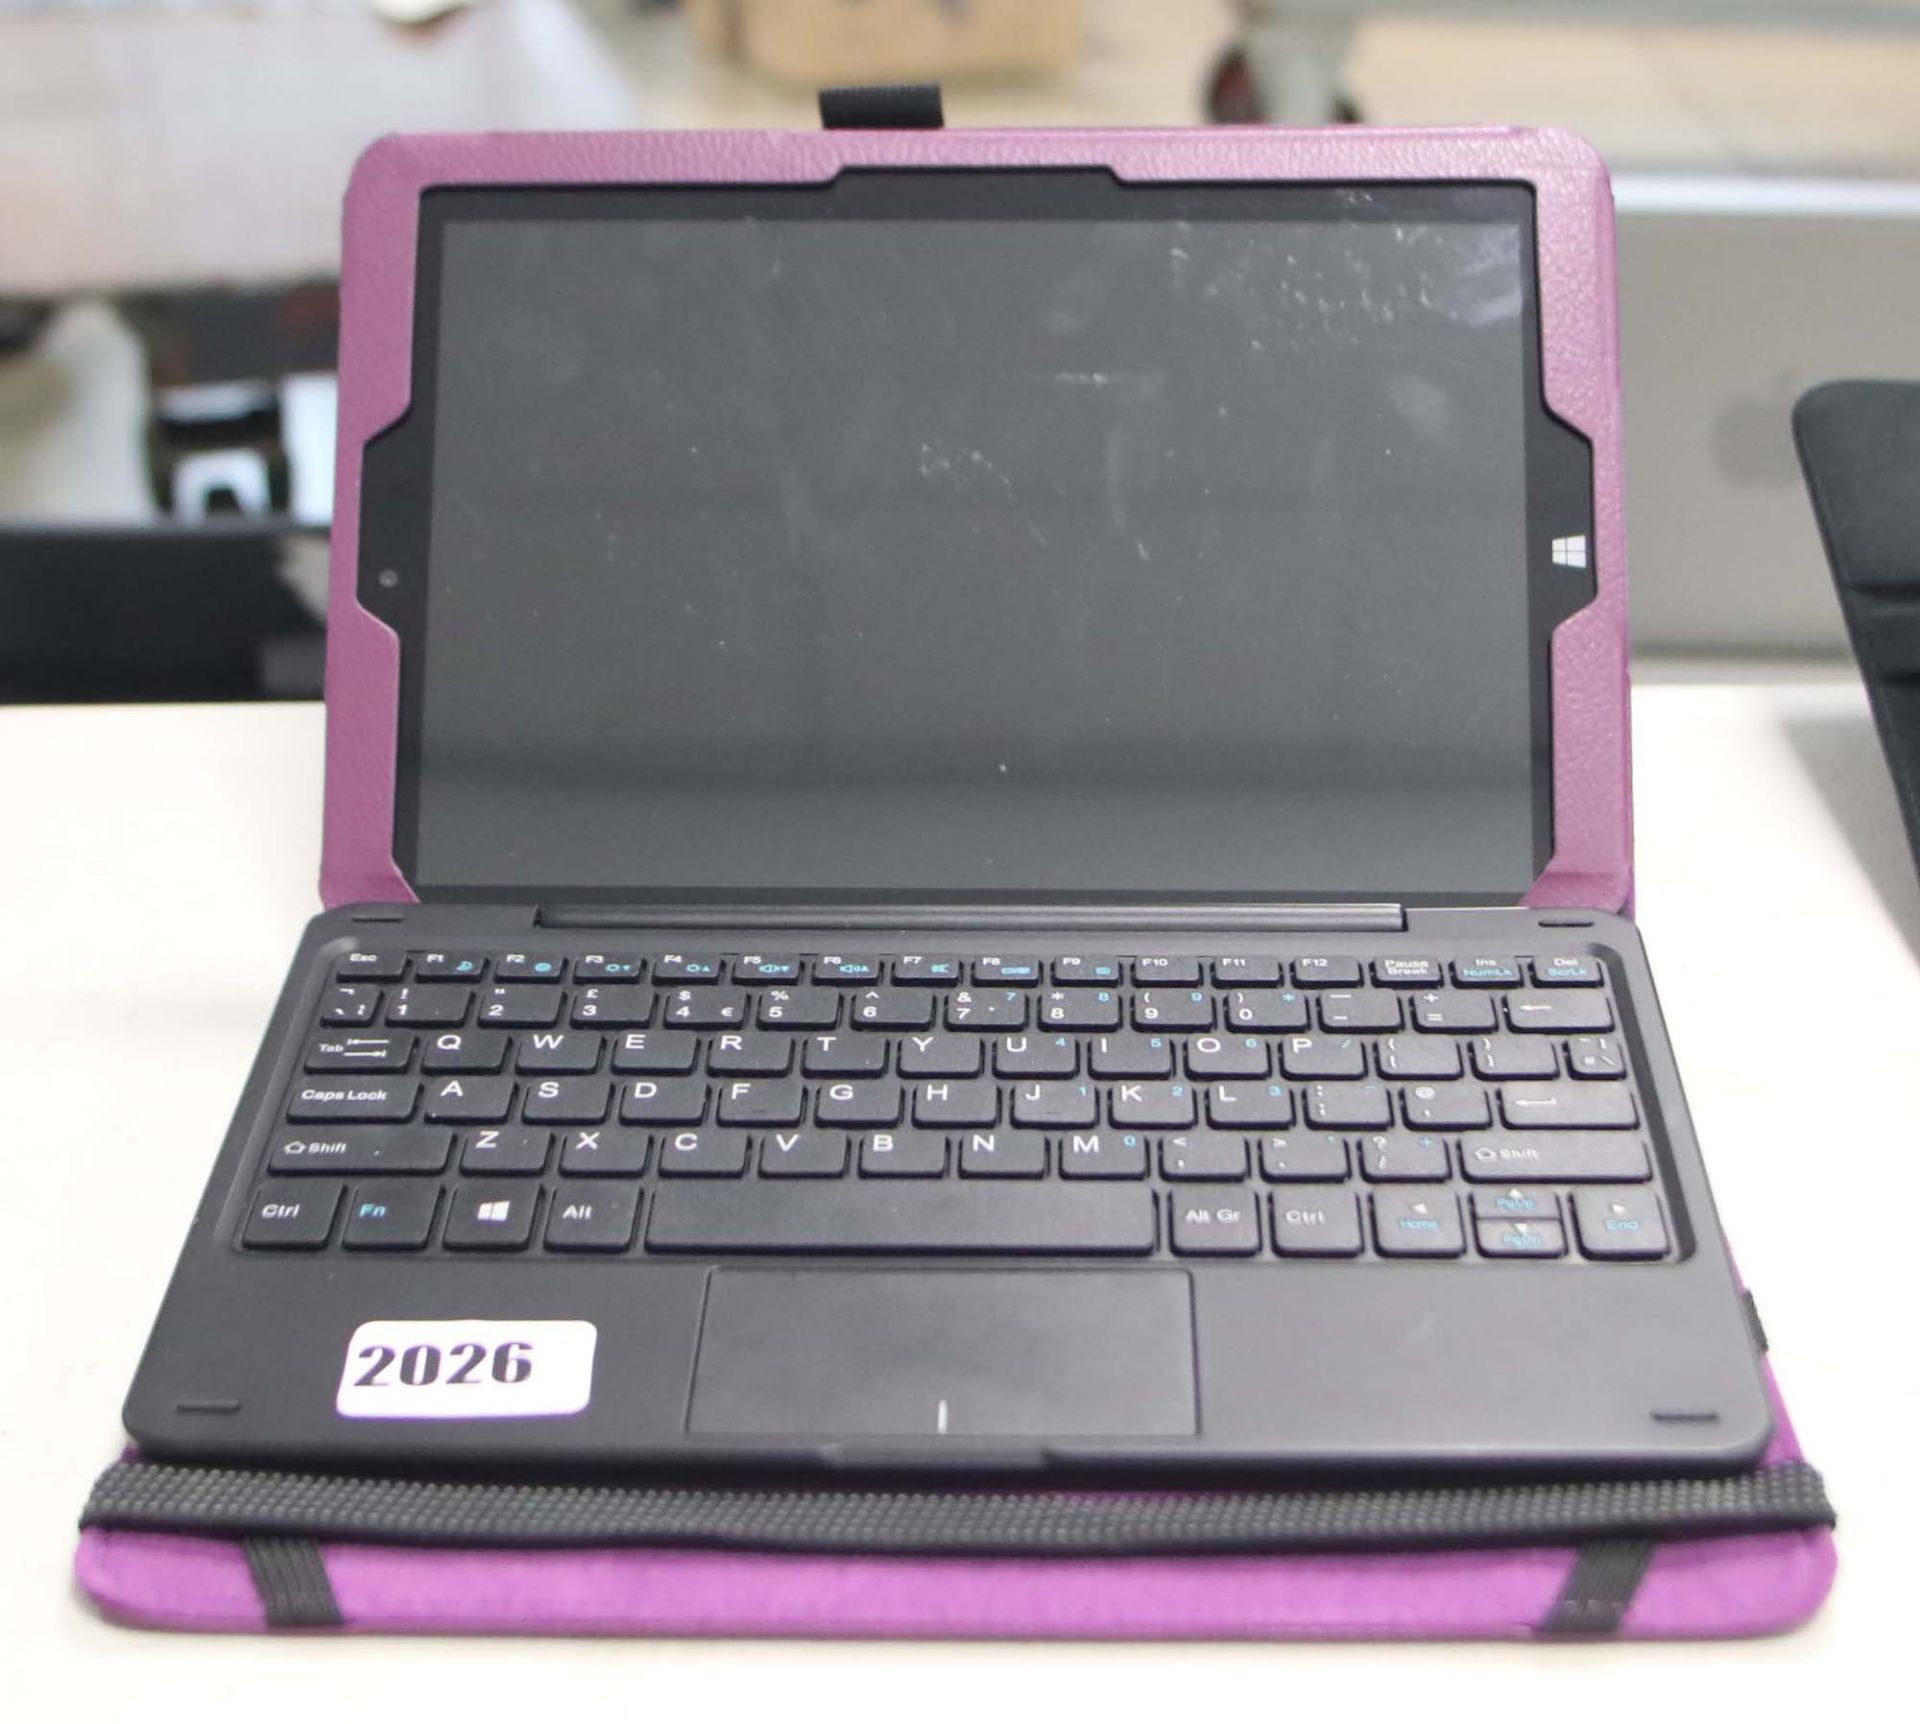 2206 - Lynix 1010B tablet 1.1 unit with attachable keyboard, Intel Atom processor, 2gb ram, 32gb